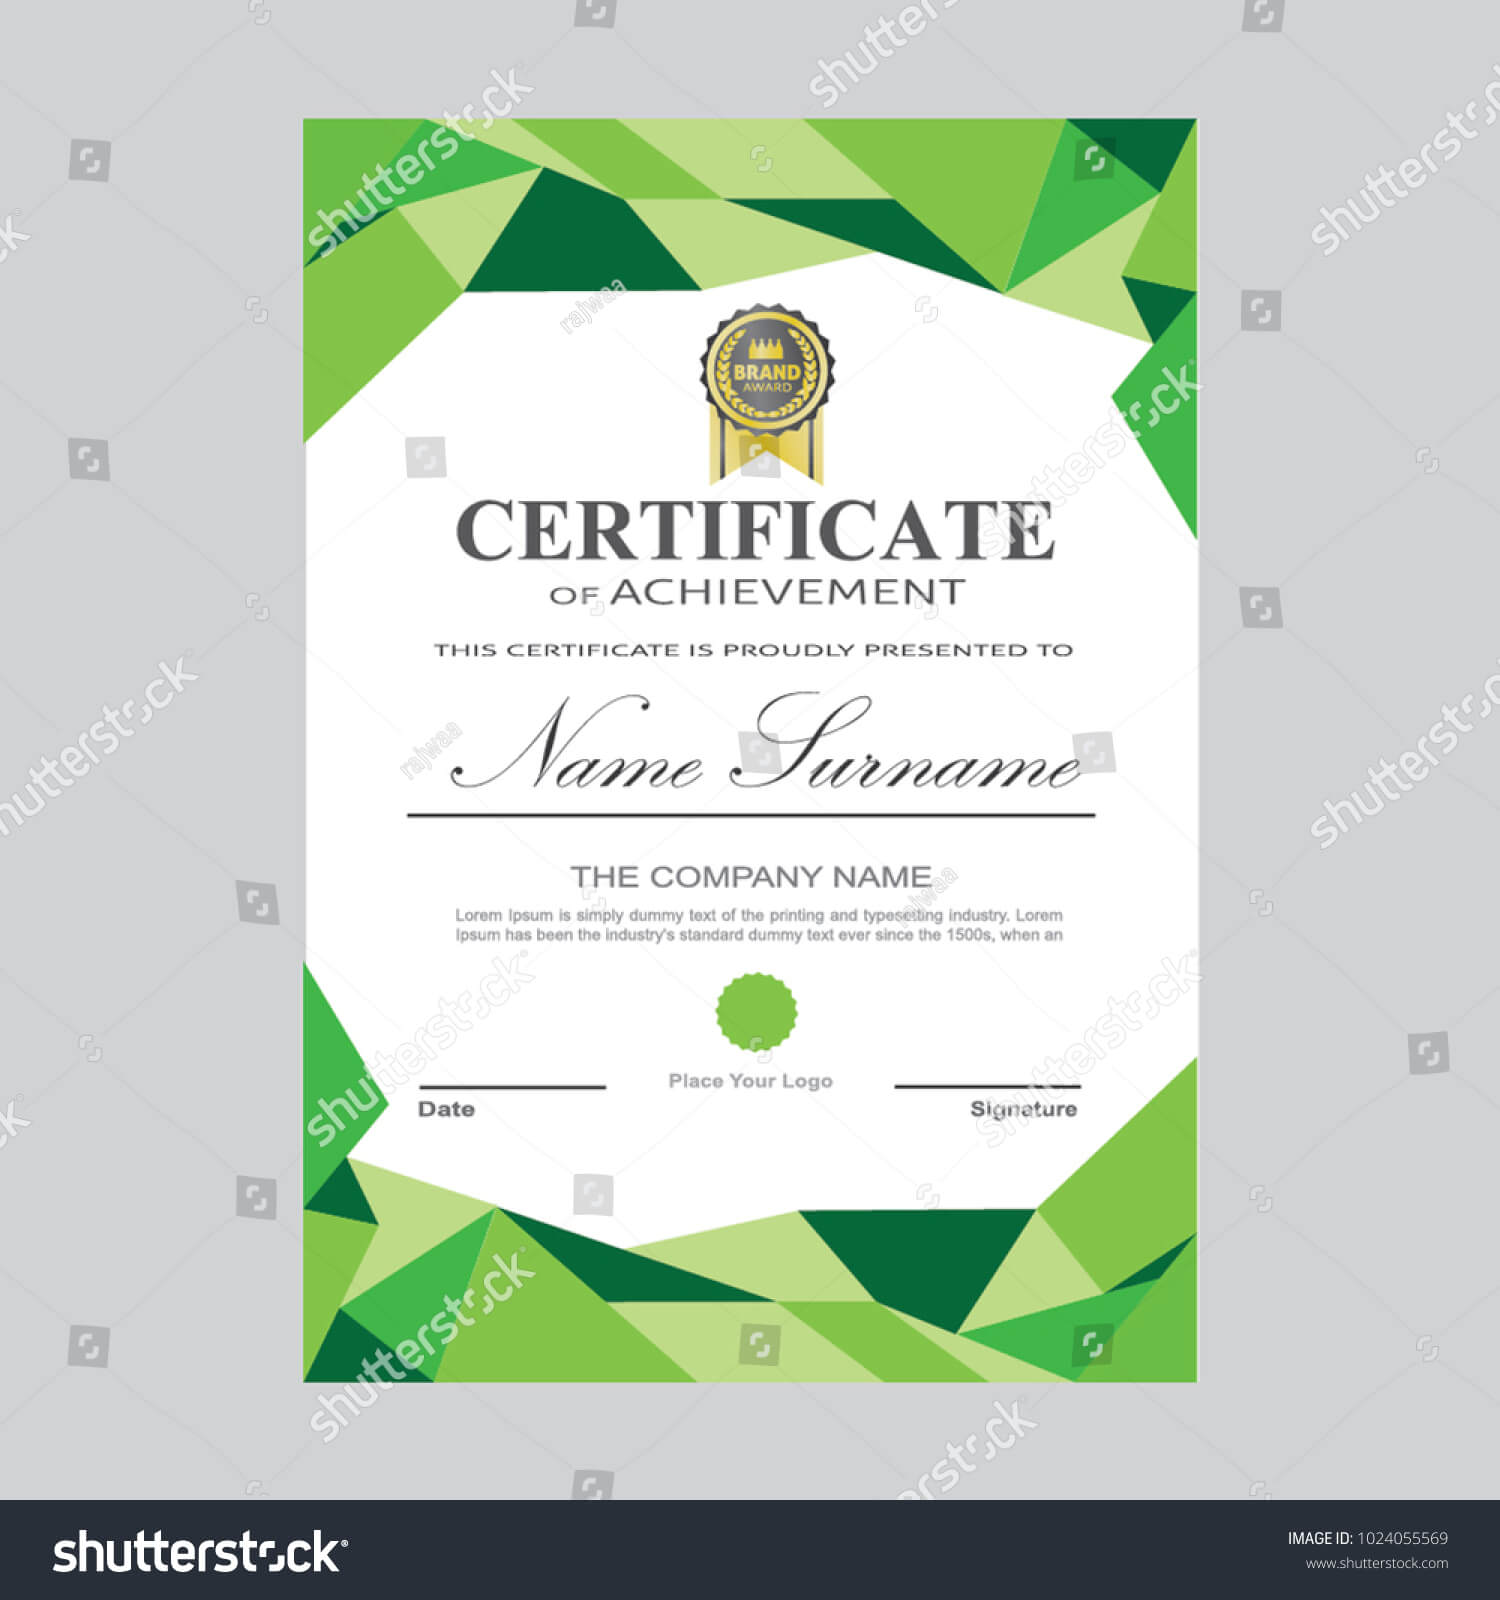 Certificate Template Modern A4 Horizontal Landscape Stock Within Landscape Certificate Templates